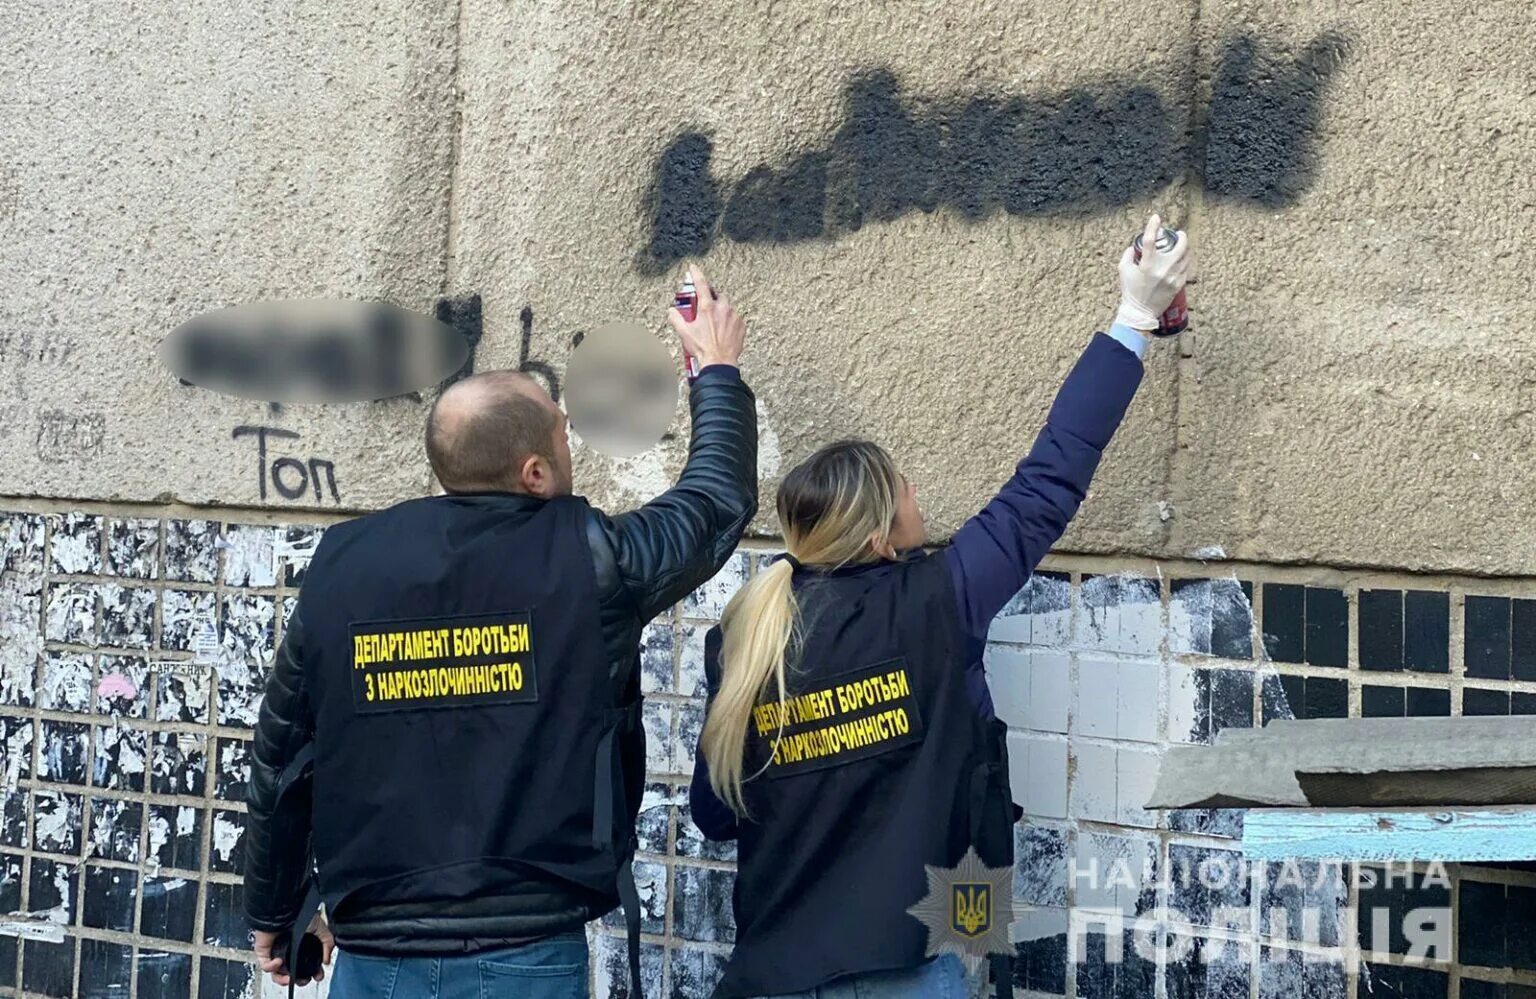 Полиция надпись на стене. Граффити наркота. Новости рекламы. Реклама наркотиков на одежде. Слушать новости без рекламы